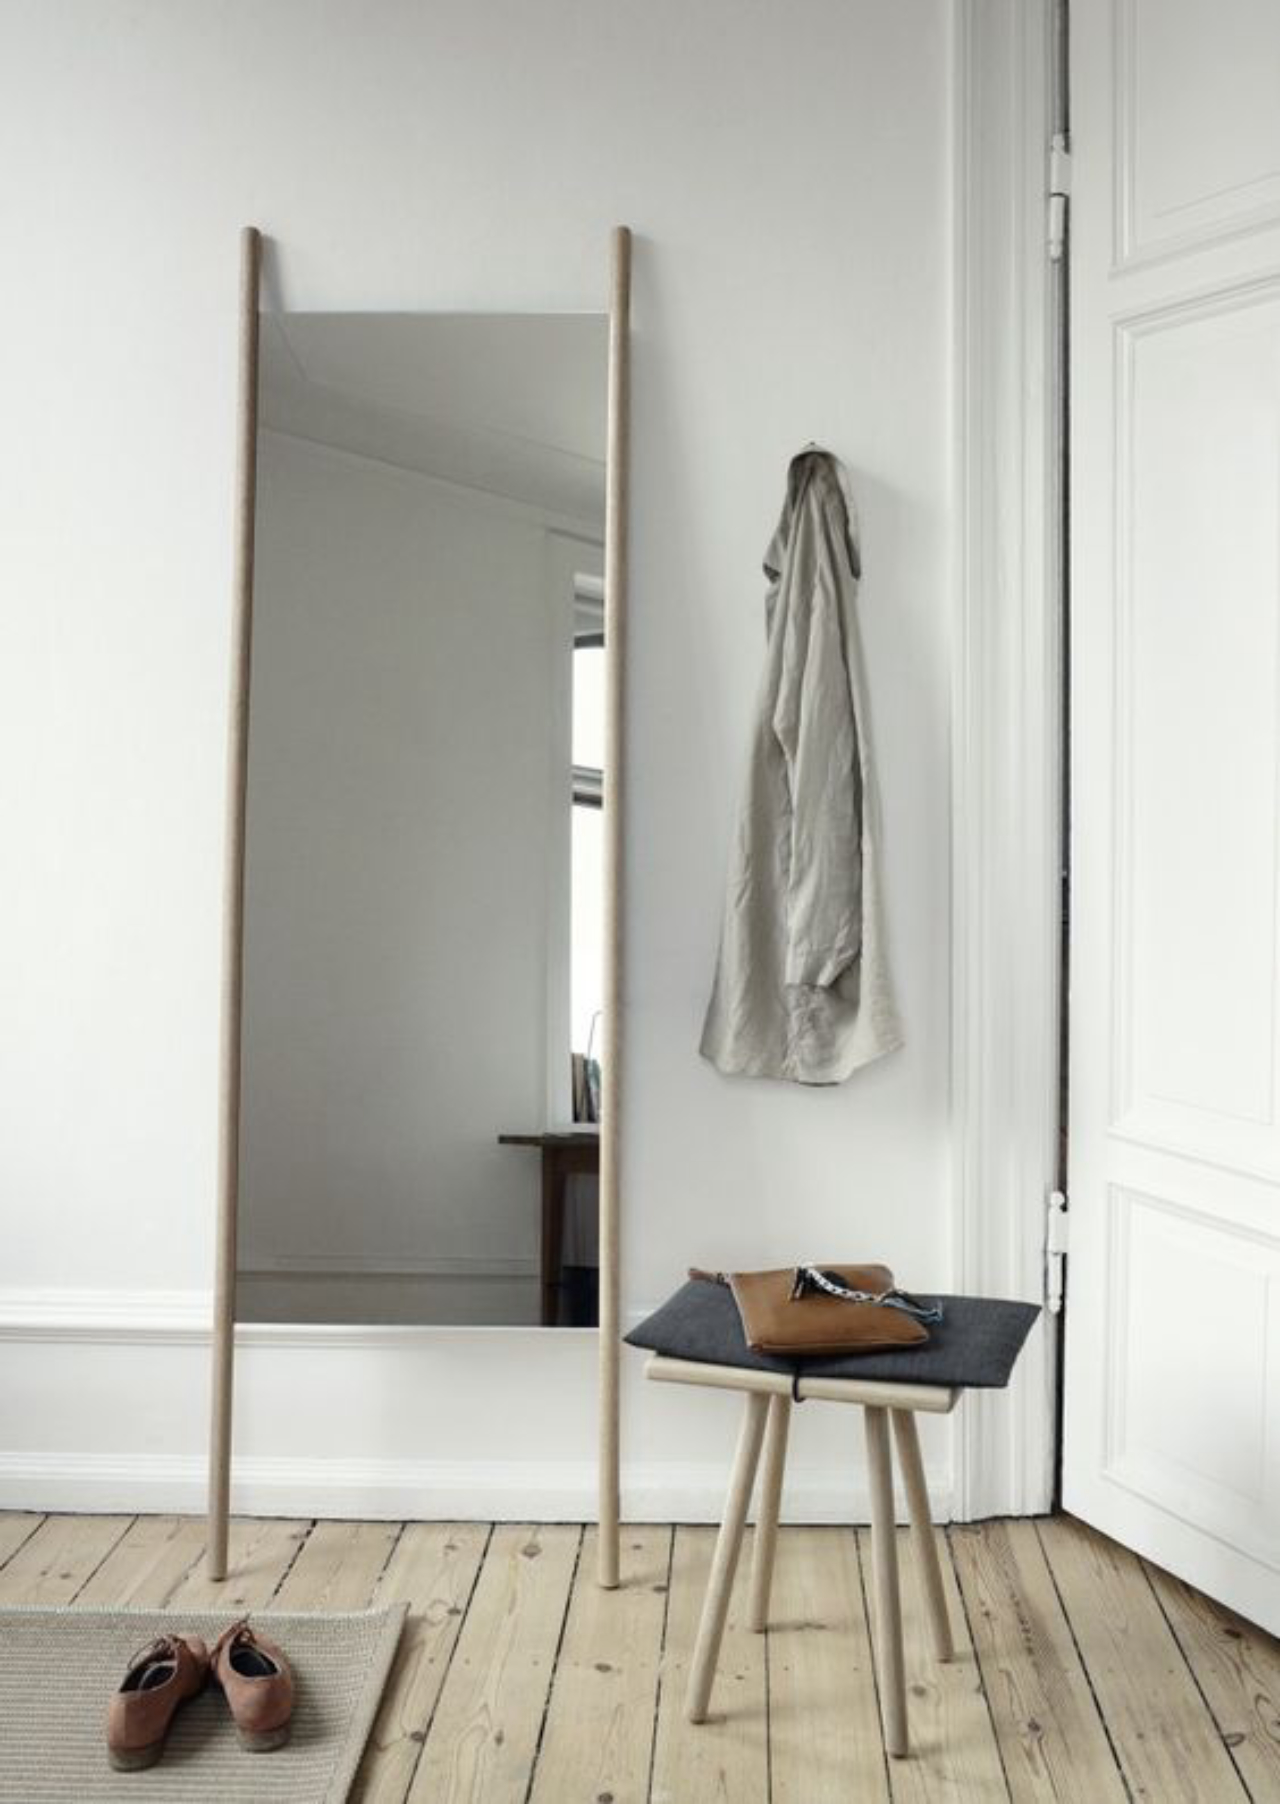 Espelhos apoiados também combinam com ambientes minimalistas. Foto: Reprodução/Pinterest